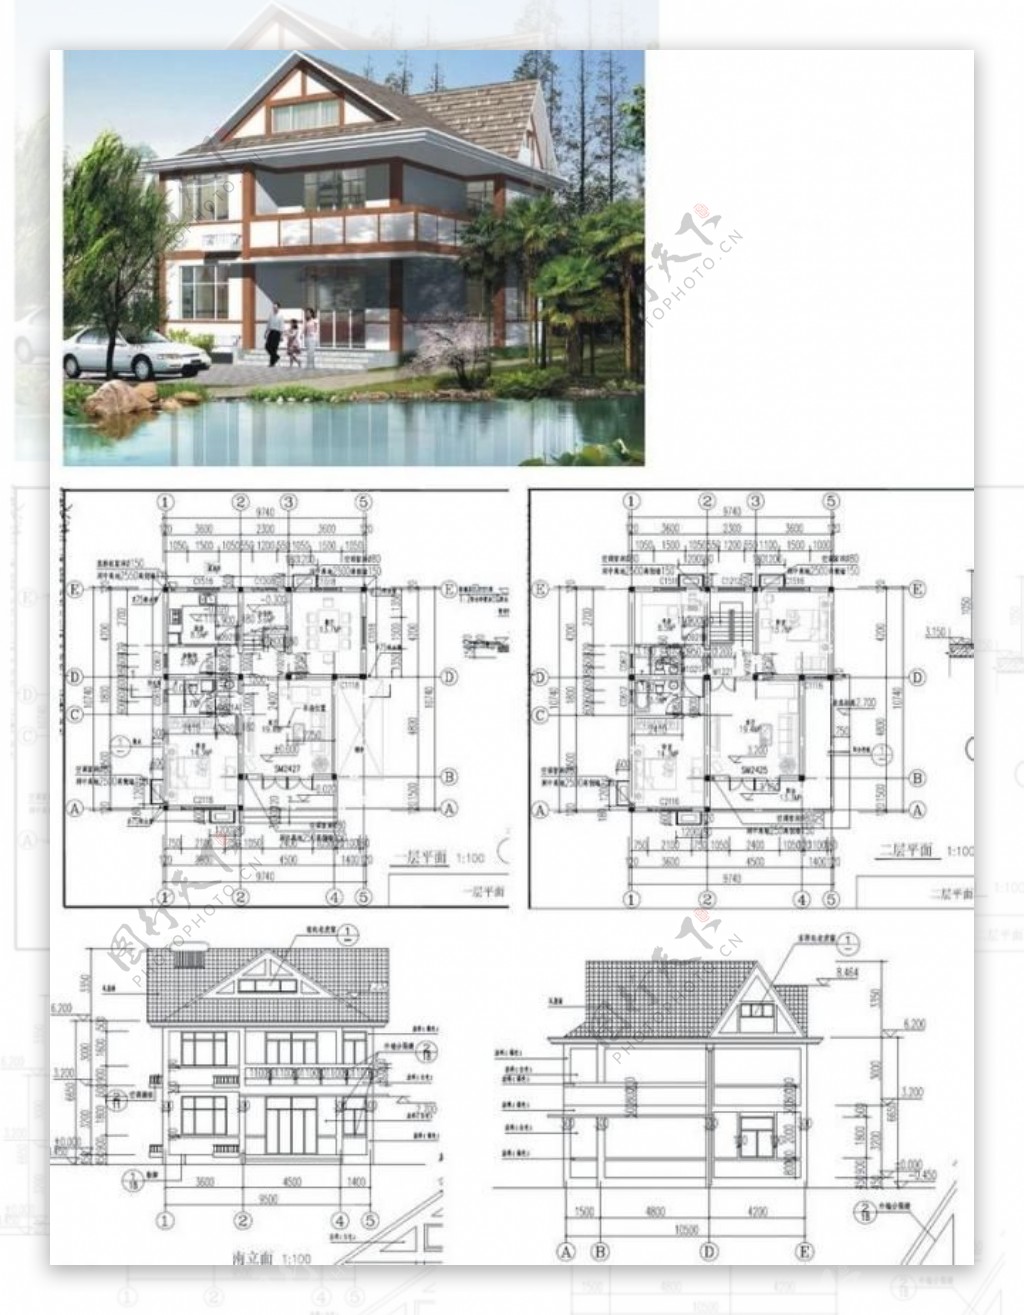 上海市建委推荐别墅方案图片